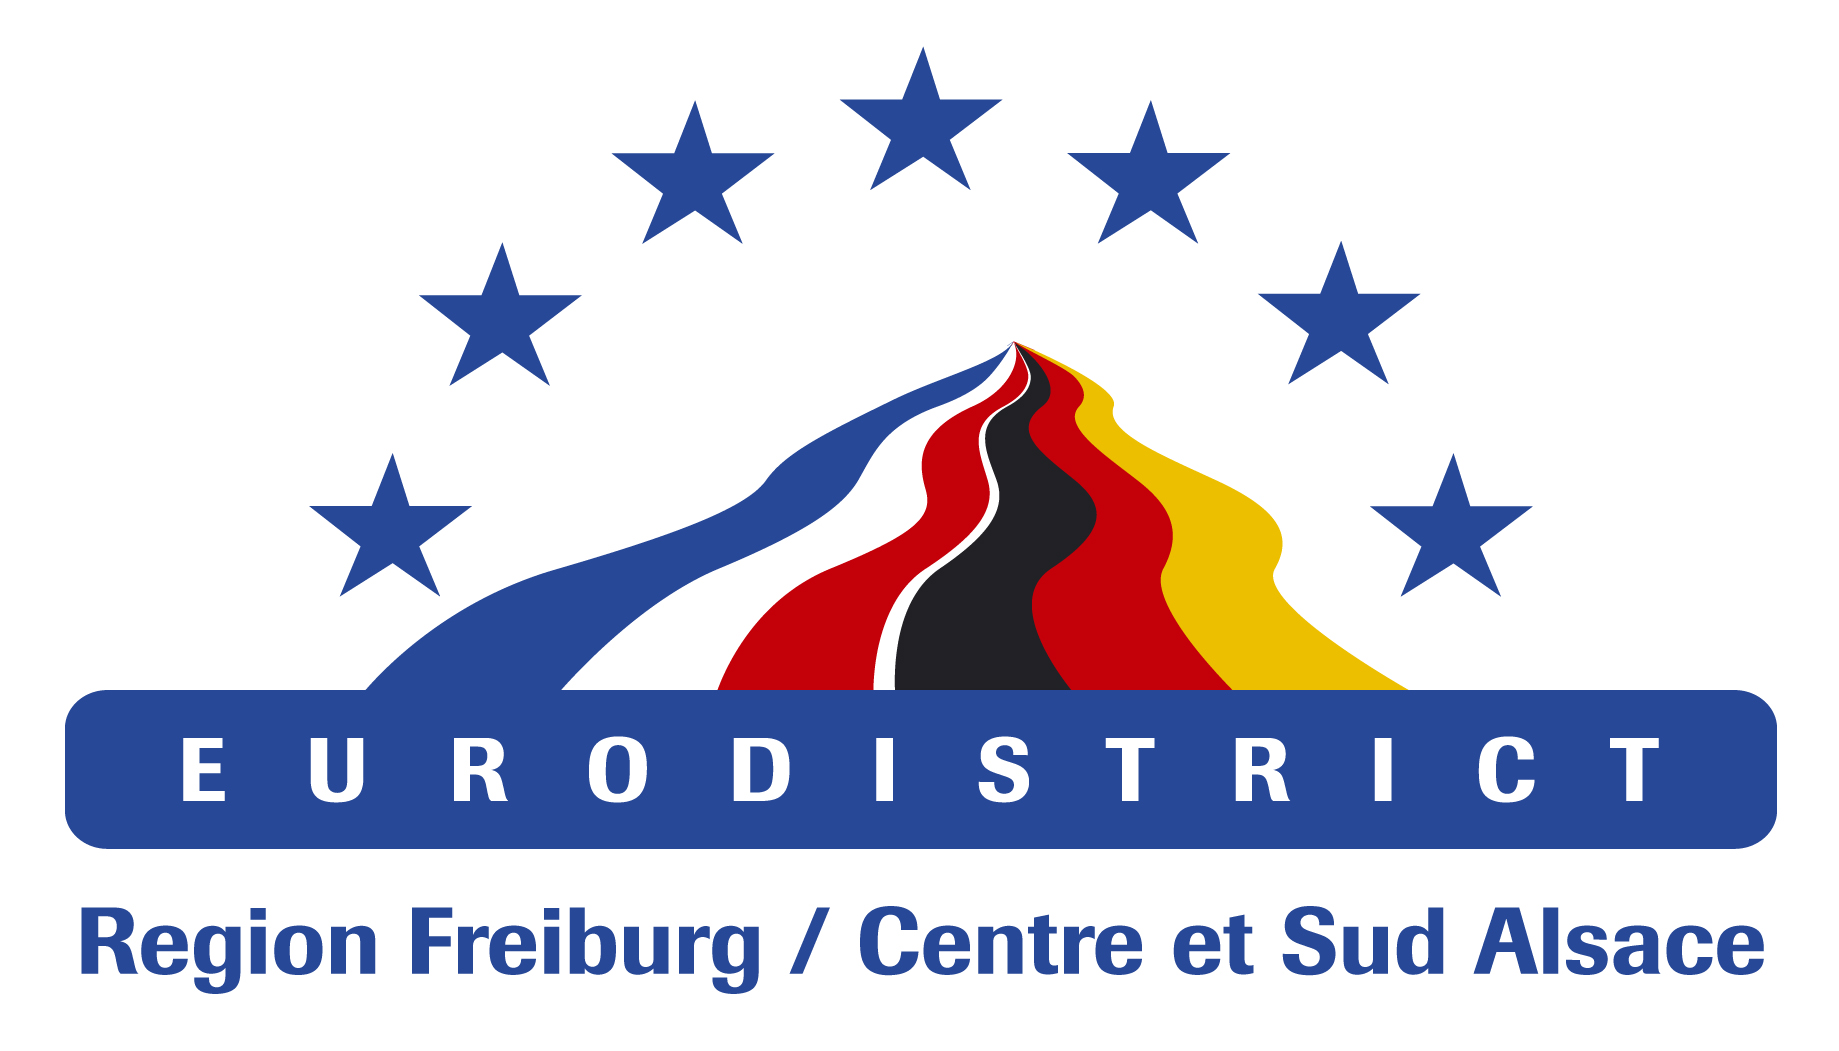 Eurodistrict Region Freiburg / Centre et Sud Alsace